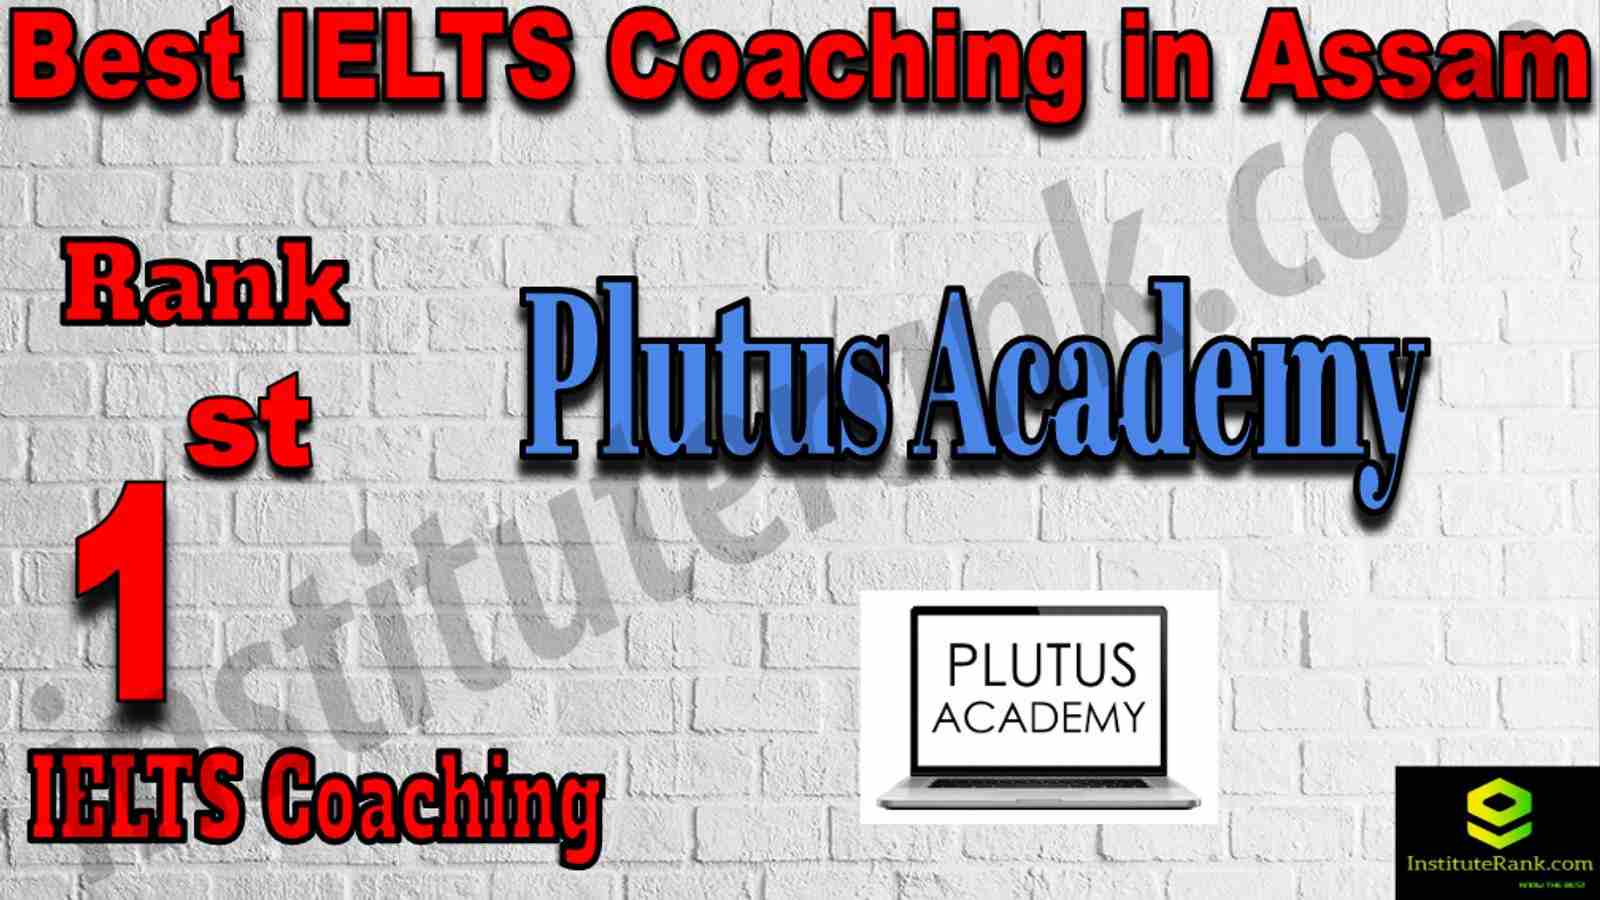 1st Best IELTS Coaching in Assam